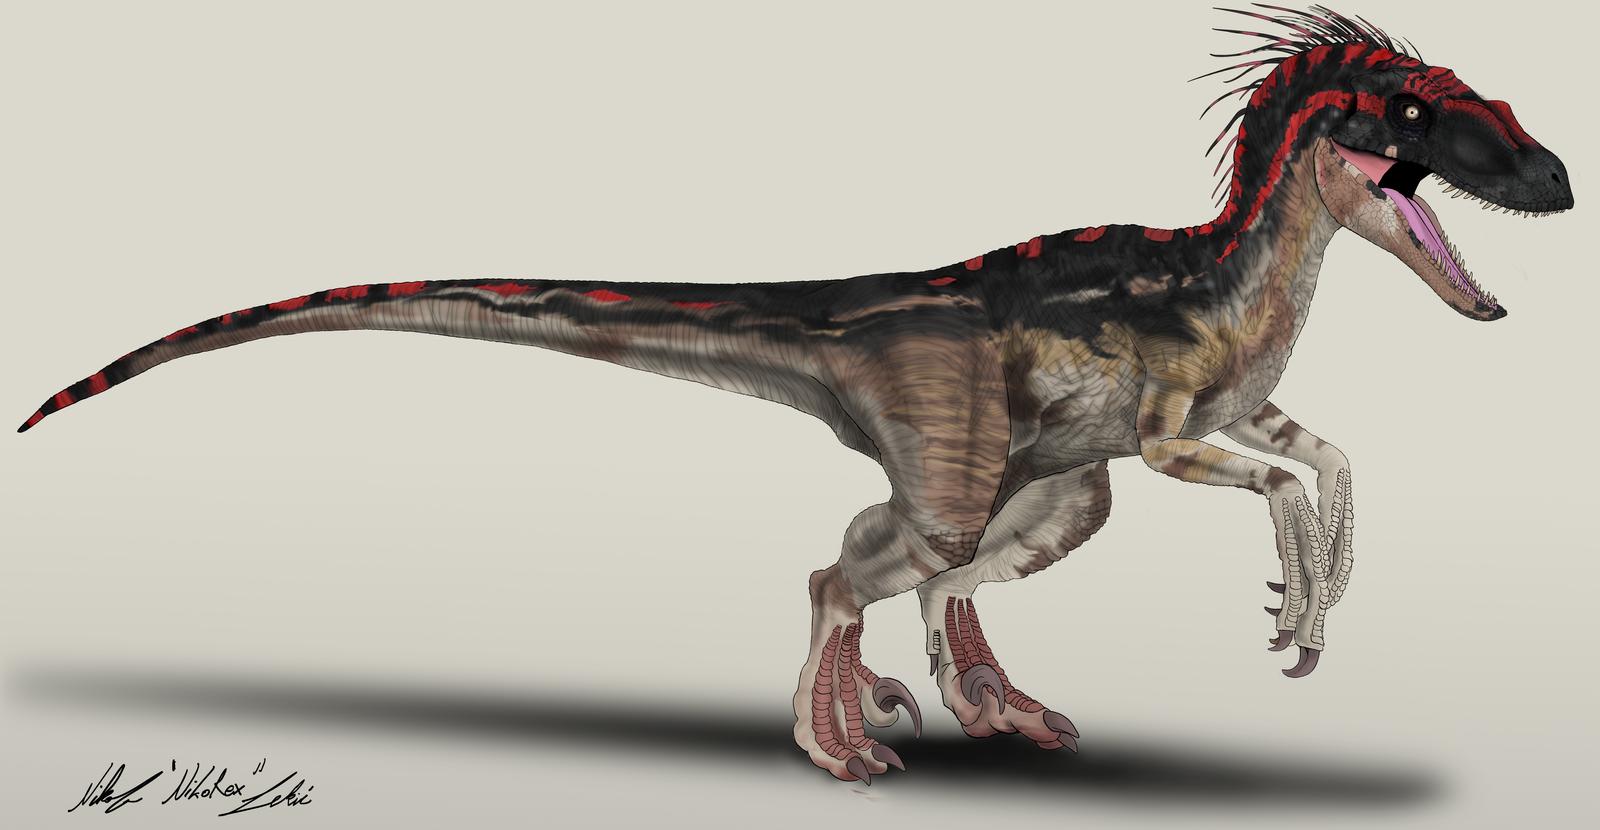 Jurassic World Concept: Red by NikoRex on DeviantArt